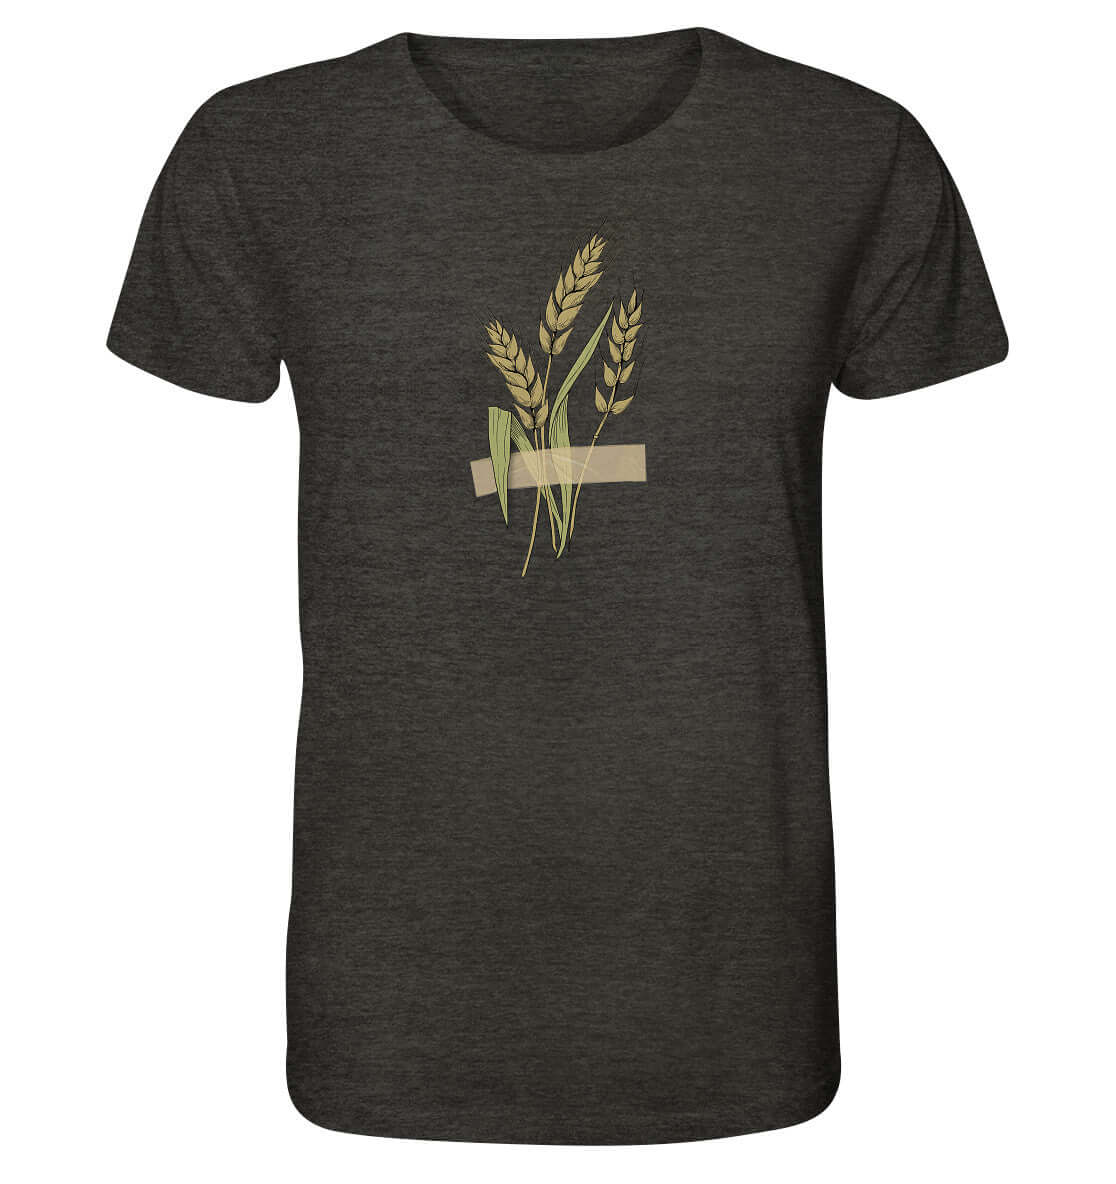 Shirt Ährenmann Agrar Acker Shirt Weizen Landwirt Shirt Landwirtschaft Dorfkram® schwarz